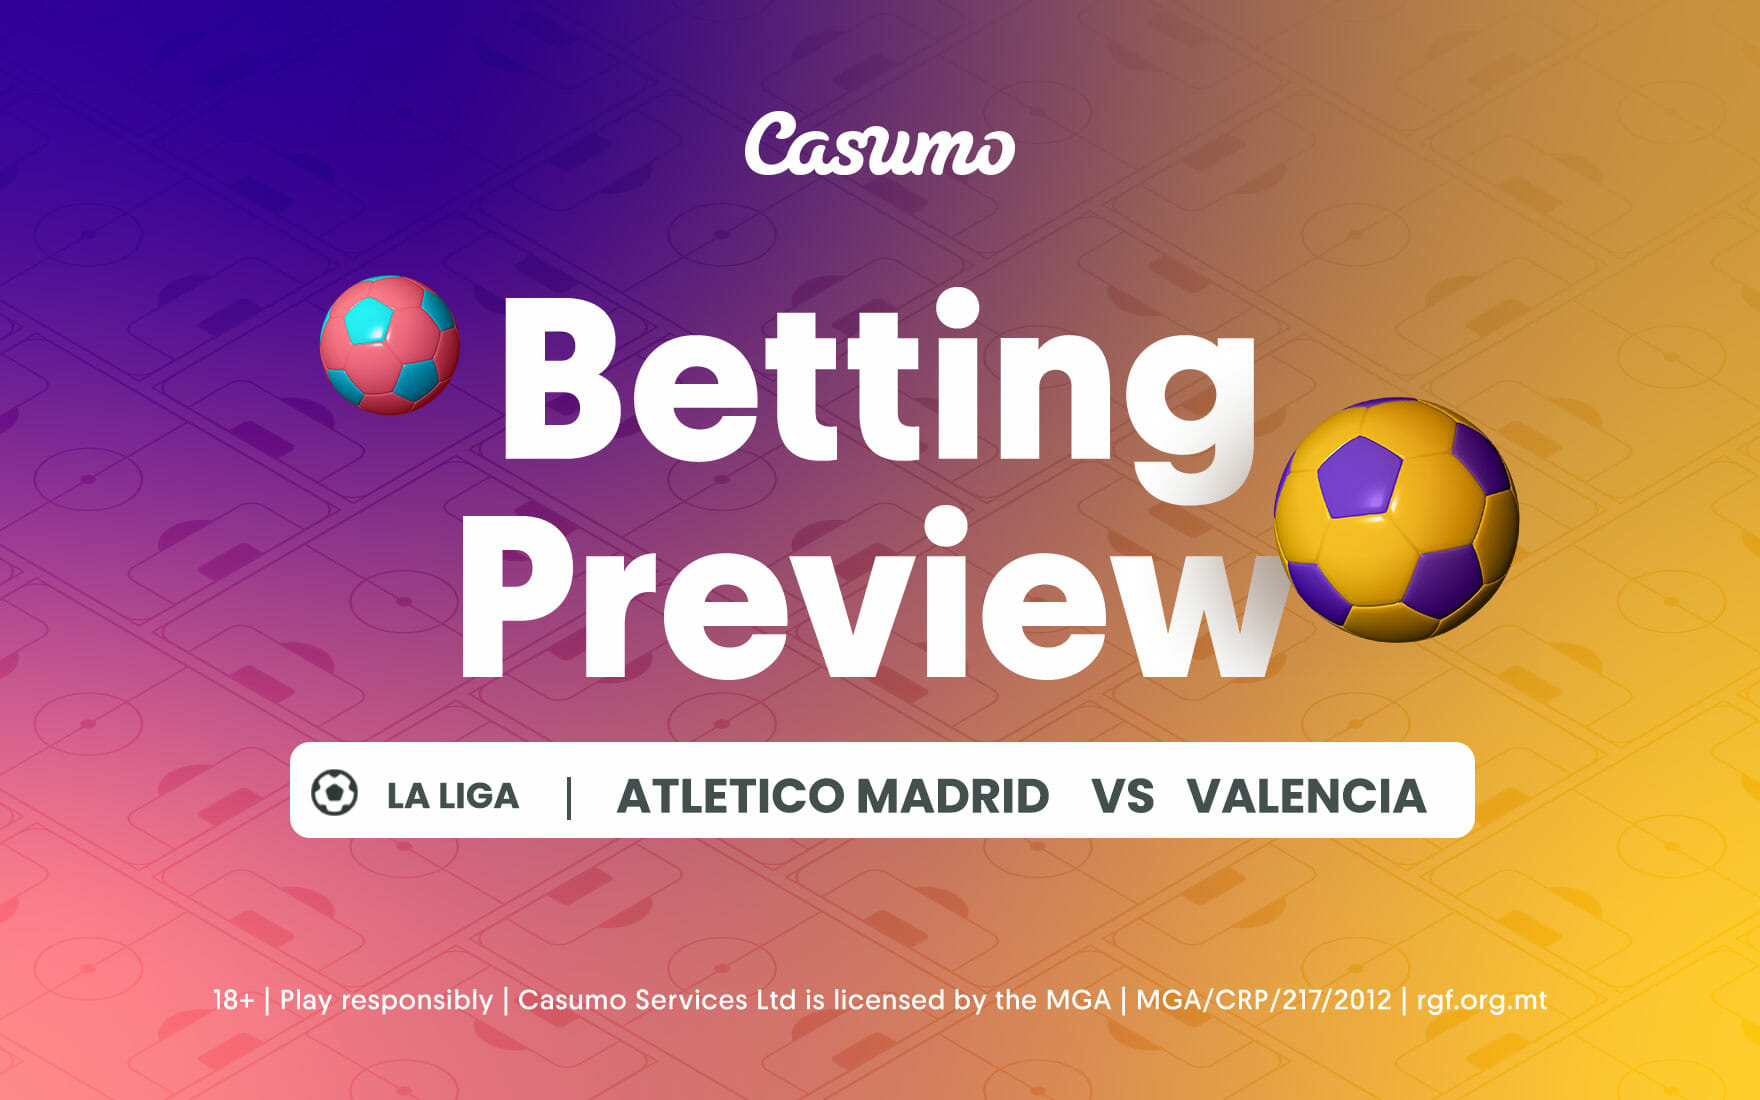 Atletico Madrid vs Valencia betting tips